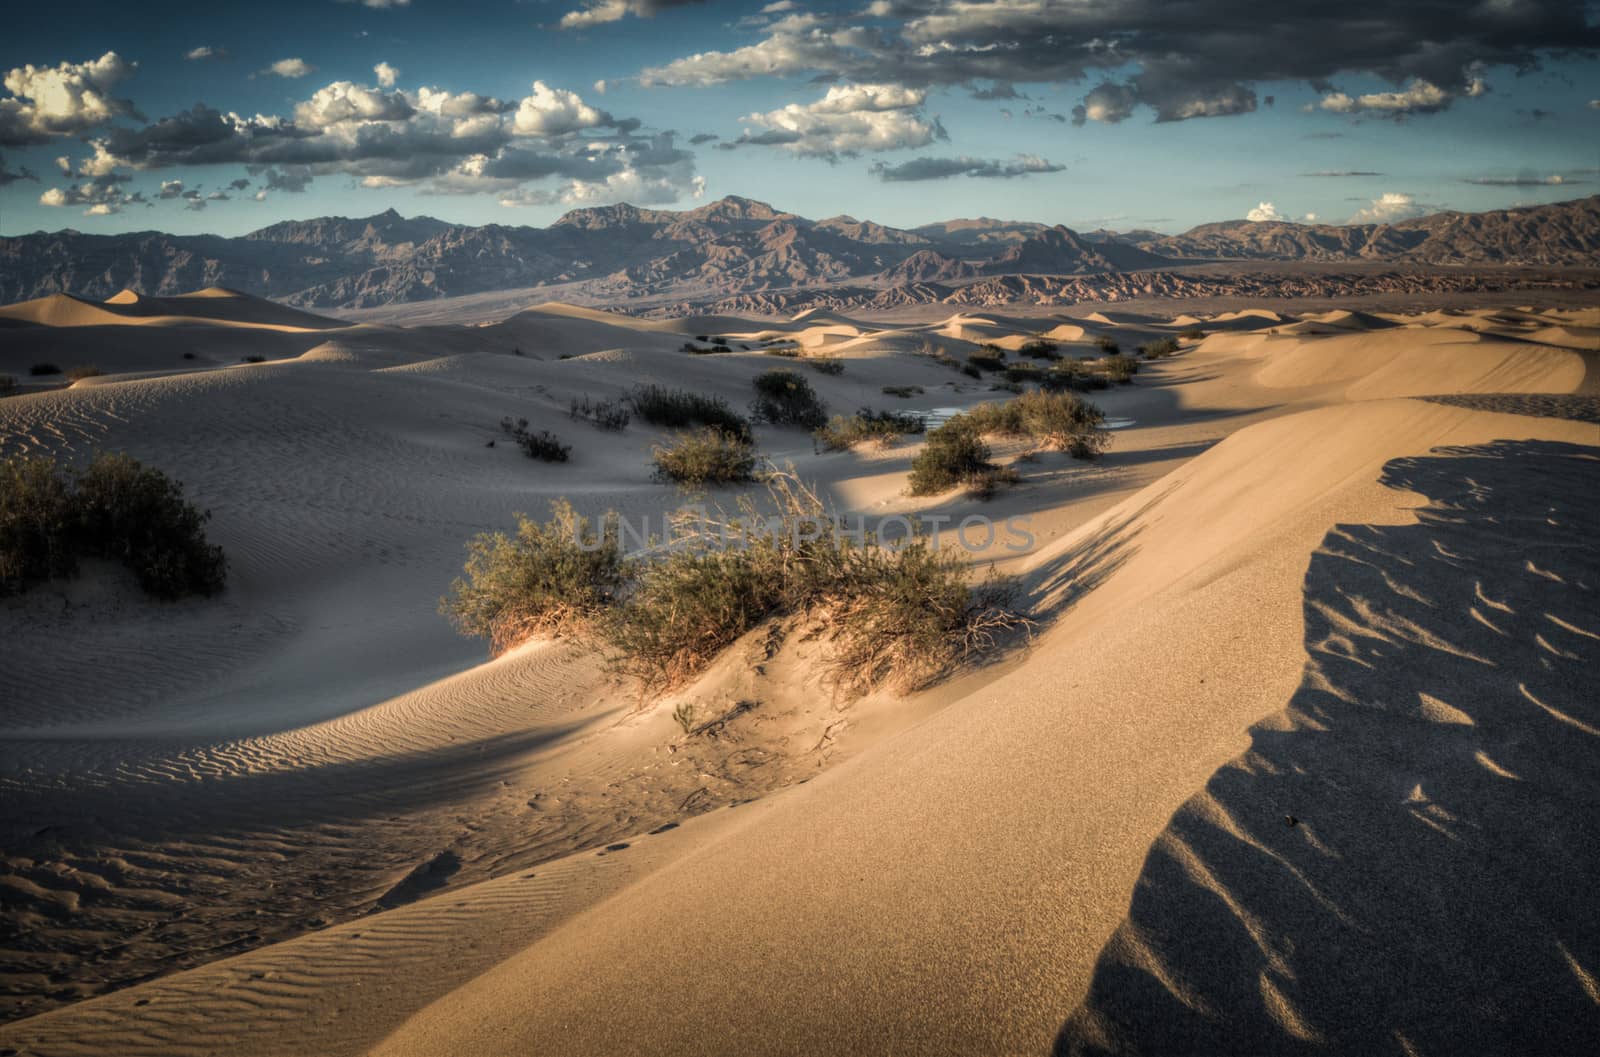 Sand dunes in Death Valley by weltreisendertj